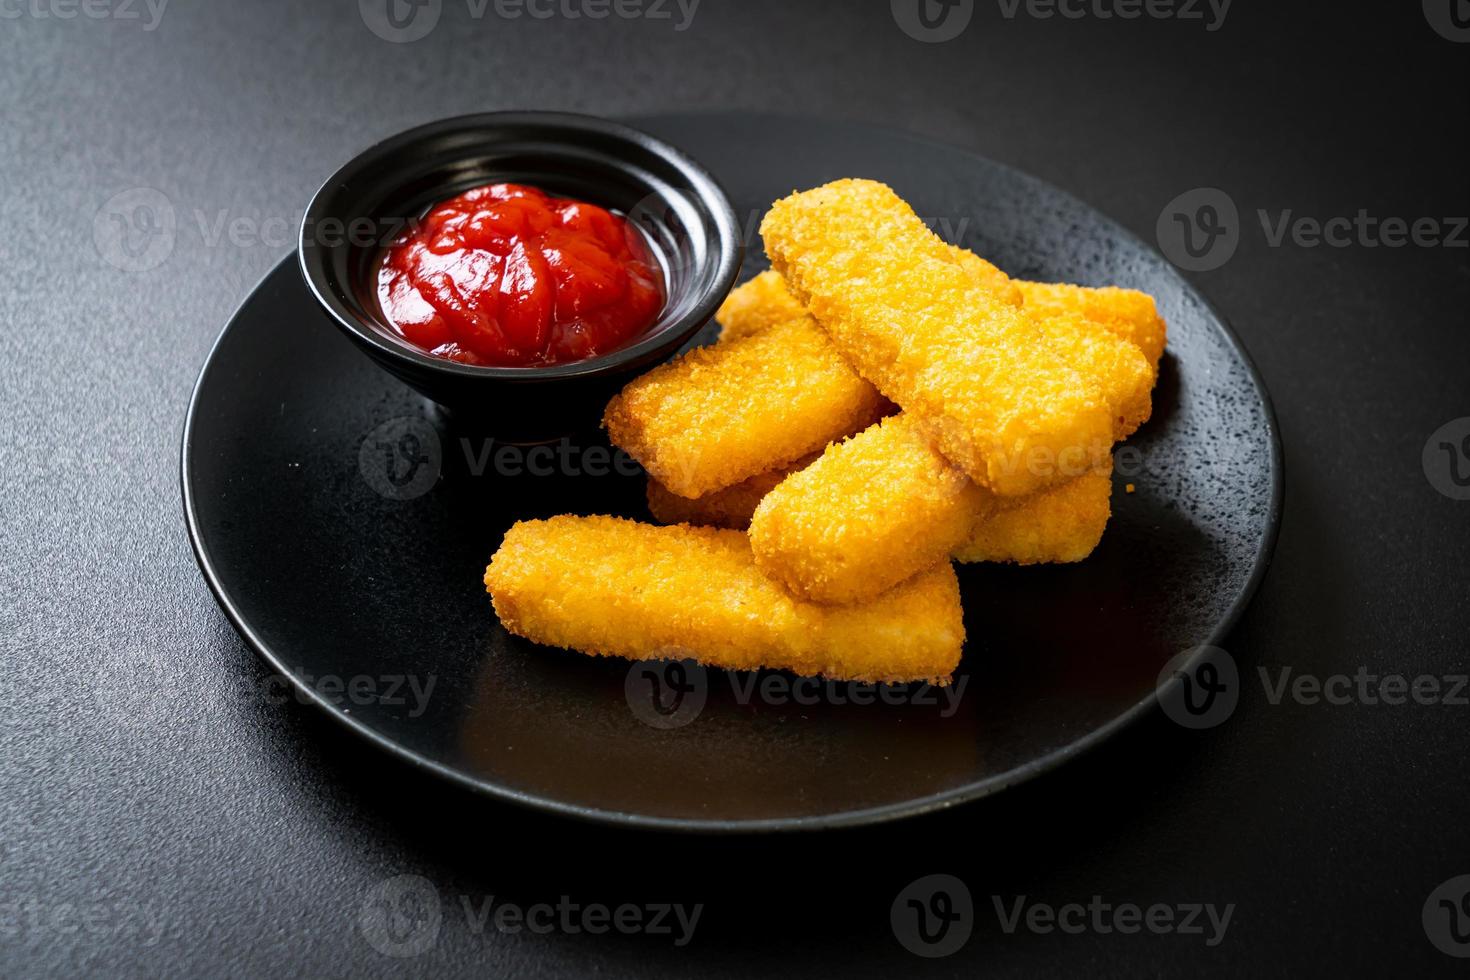 crocantes de peixe frito com migalhas de pão servidos no prato com ketchup foto